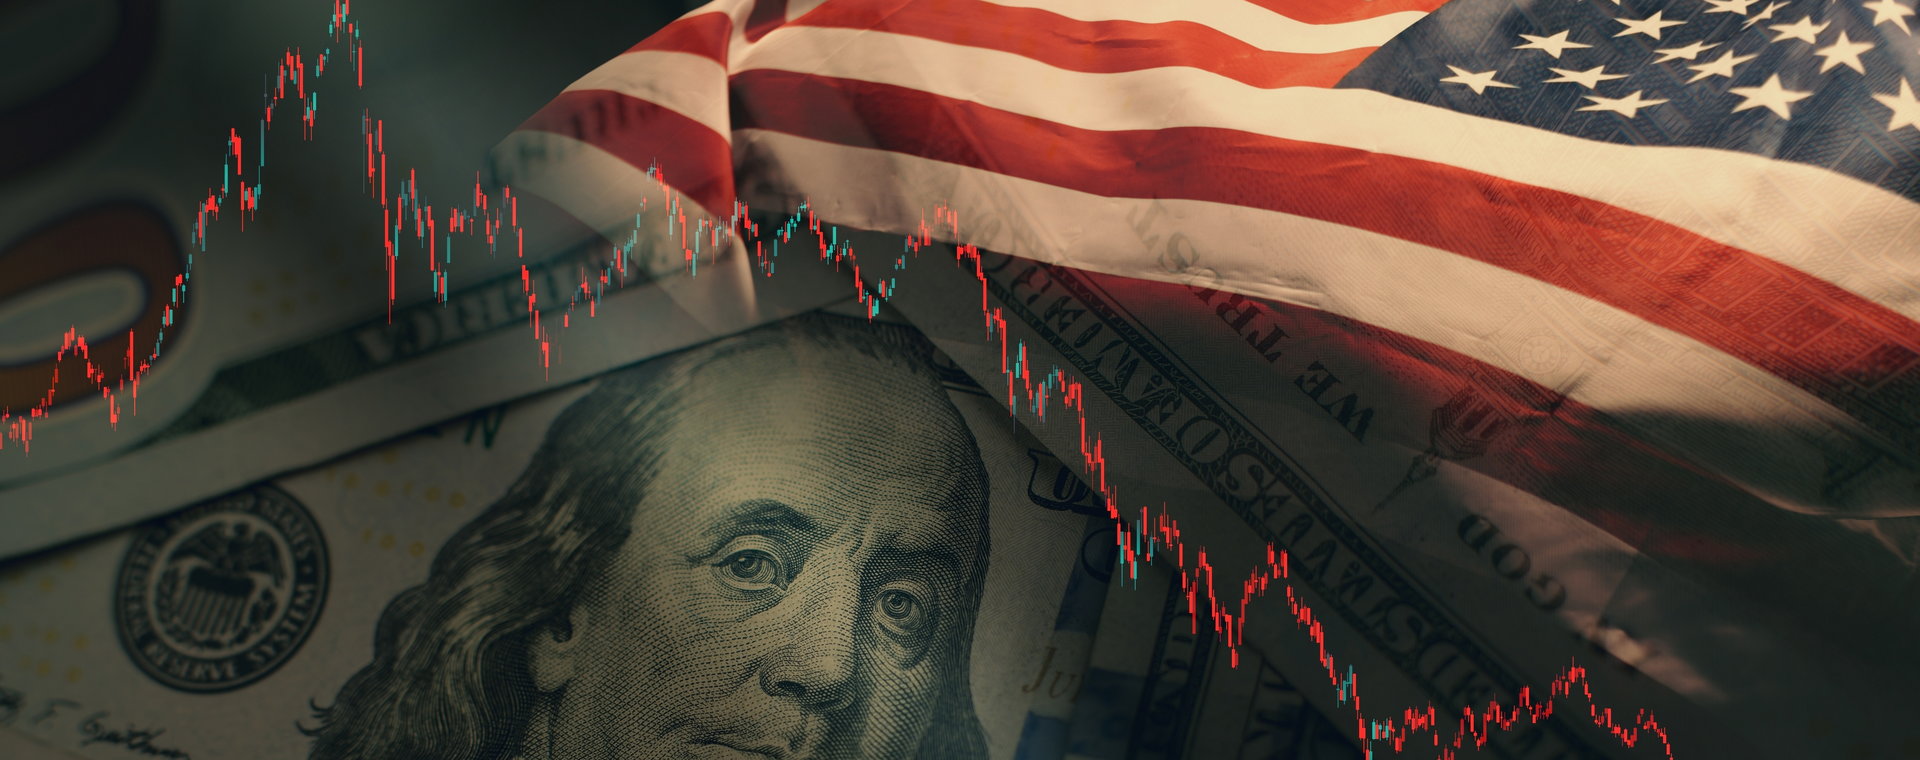 Amerykanie powinni zacząć martwić się o pozycję swojej waluty w przyszłości